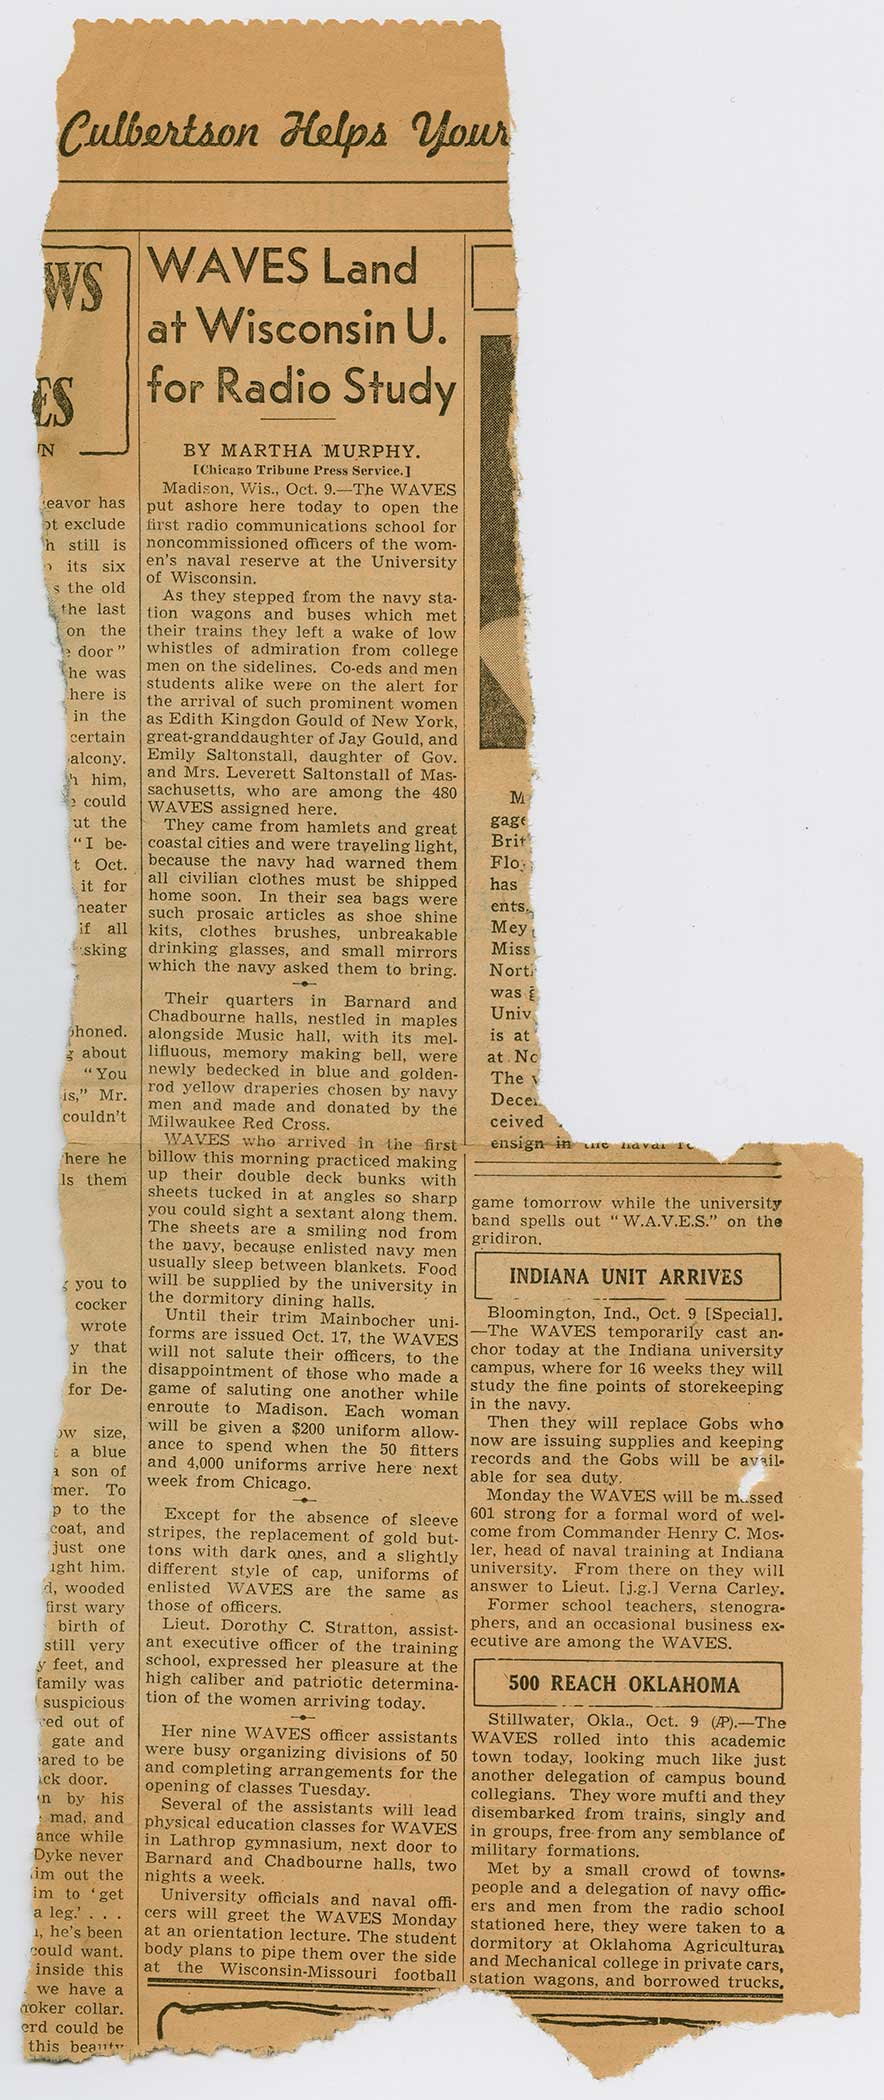 Un recorte de periódico que muestra un artículo titulado "WAVES atterizan", debajo de él una larga columna de texto.